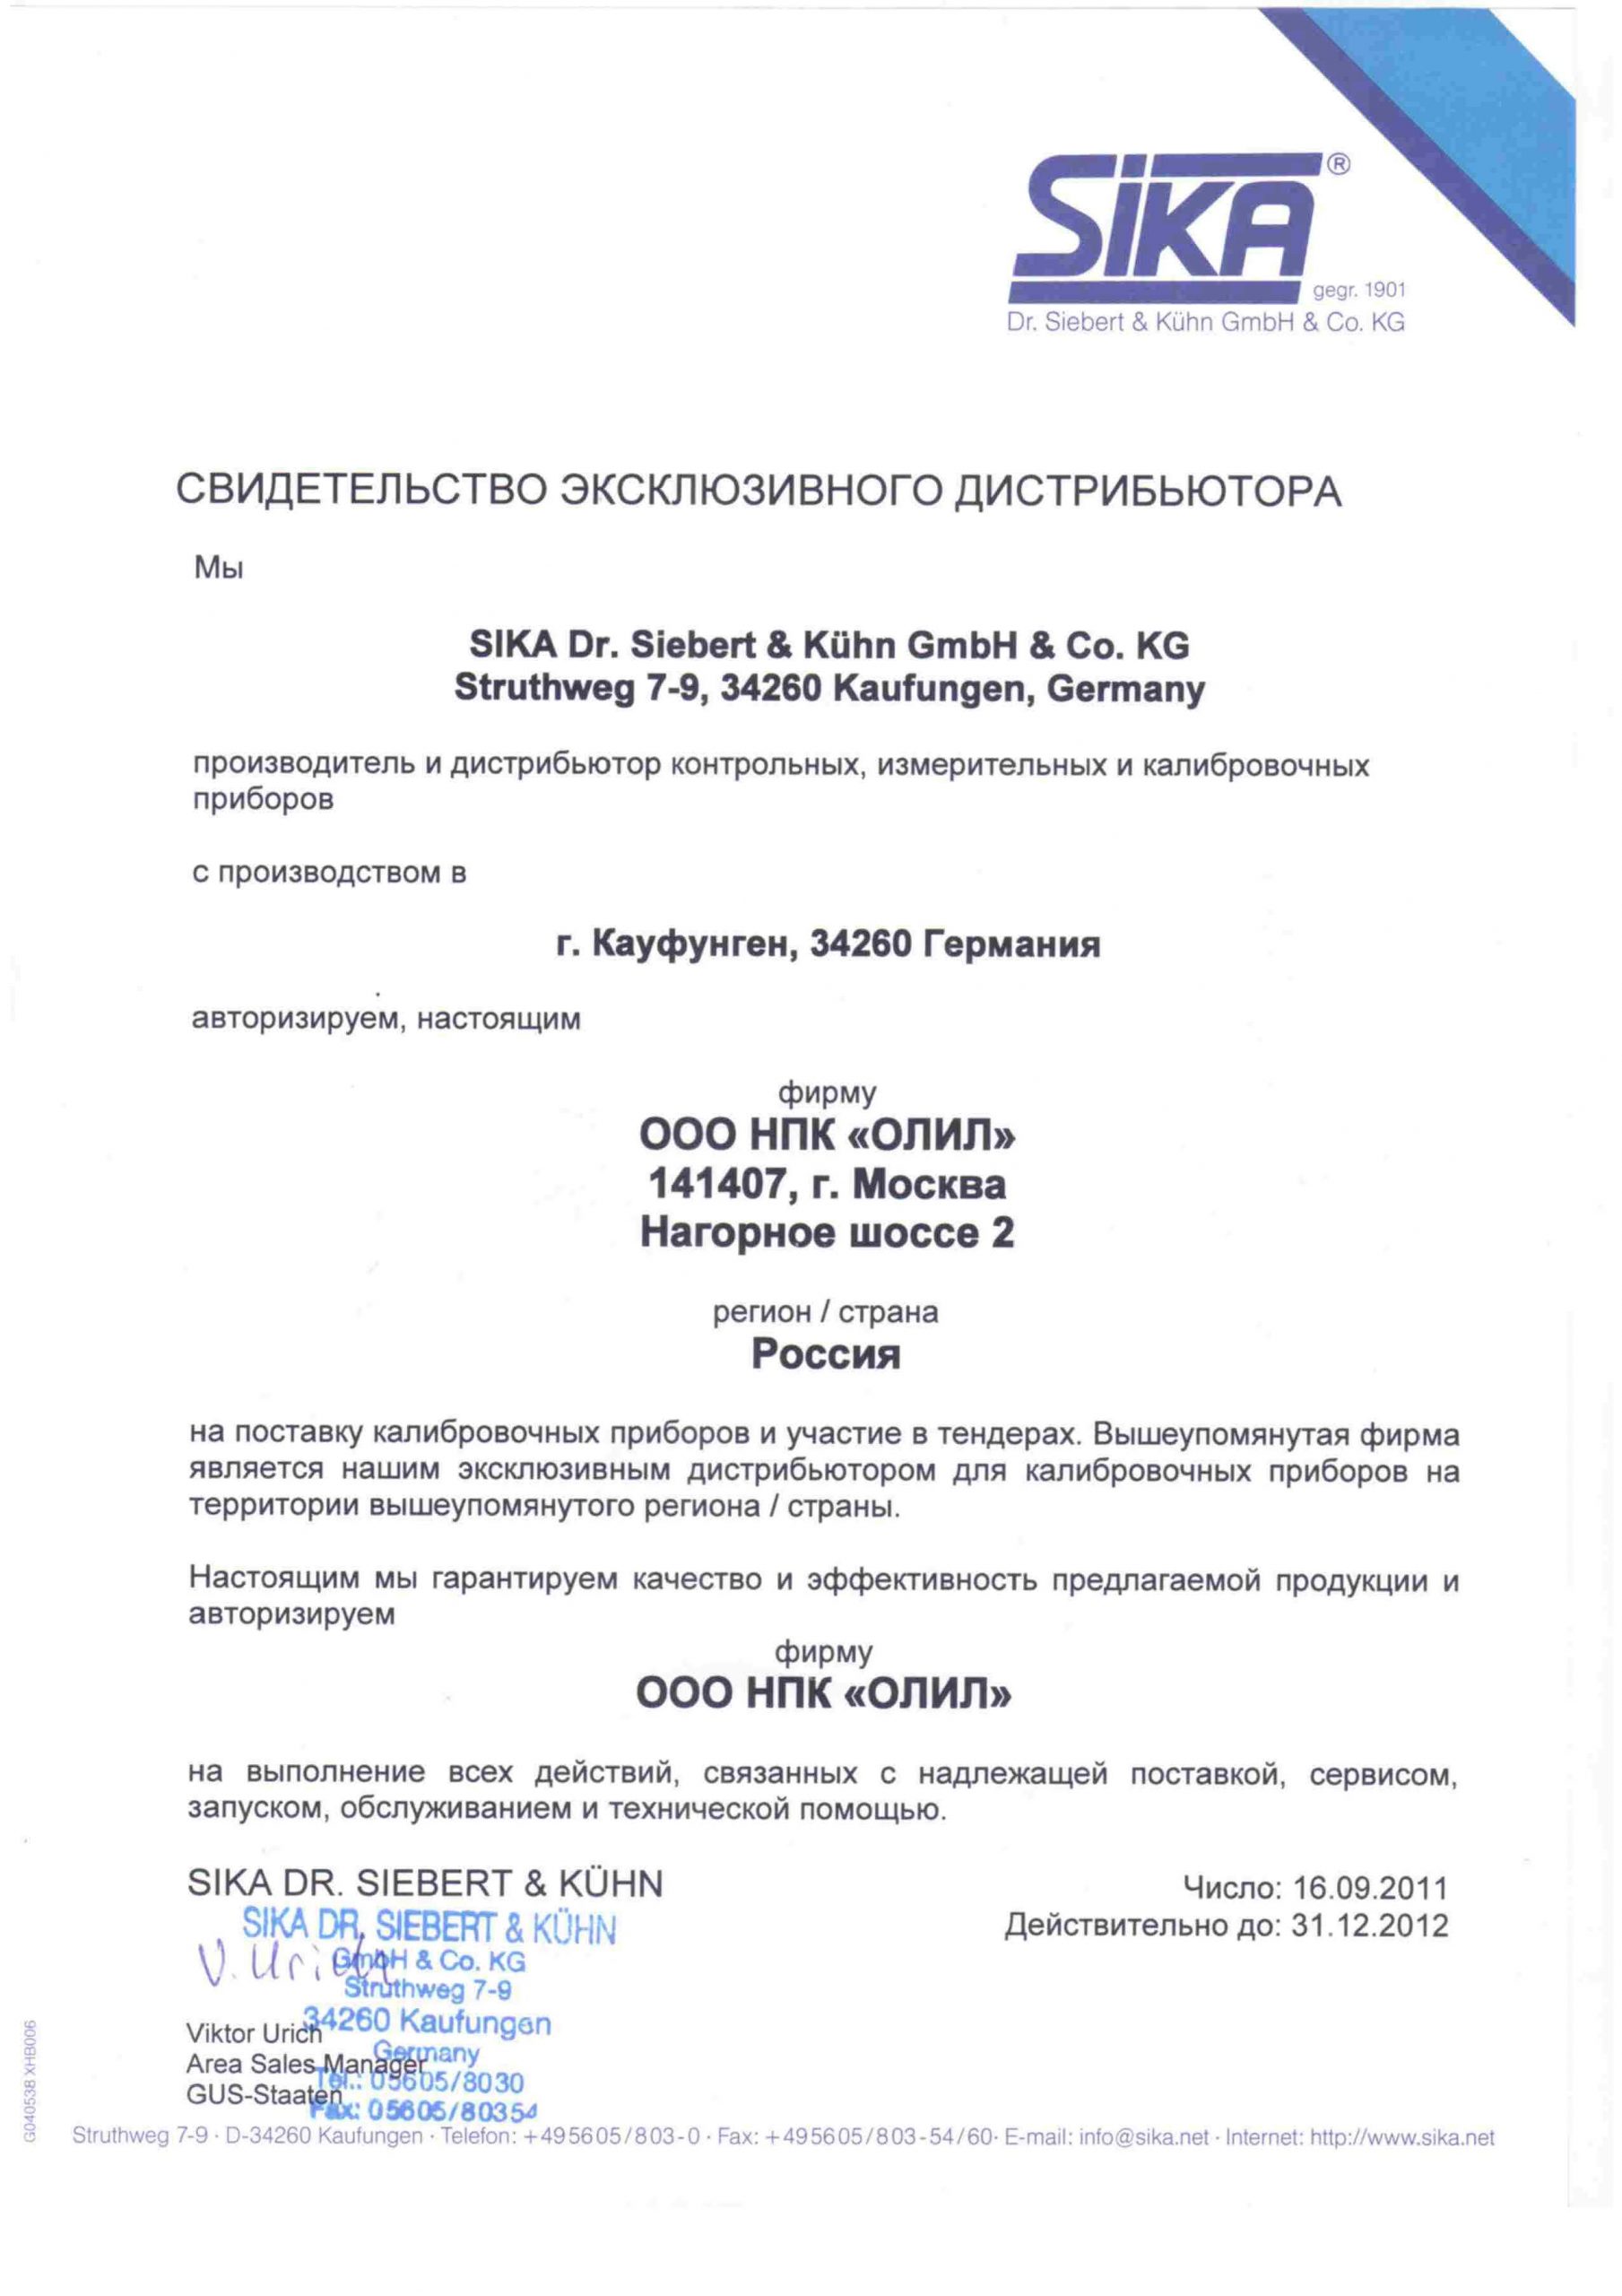 Сертификат официального дистрибьютора SIKA в России